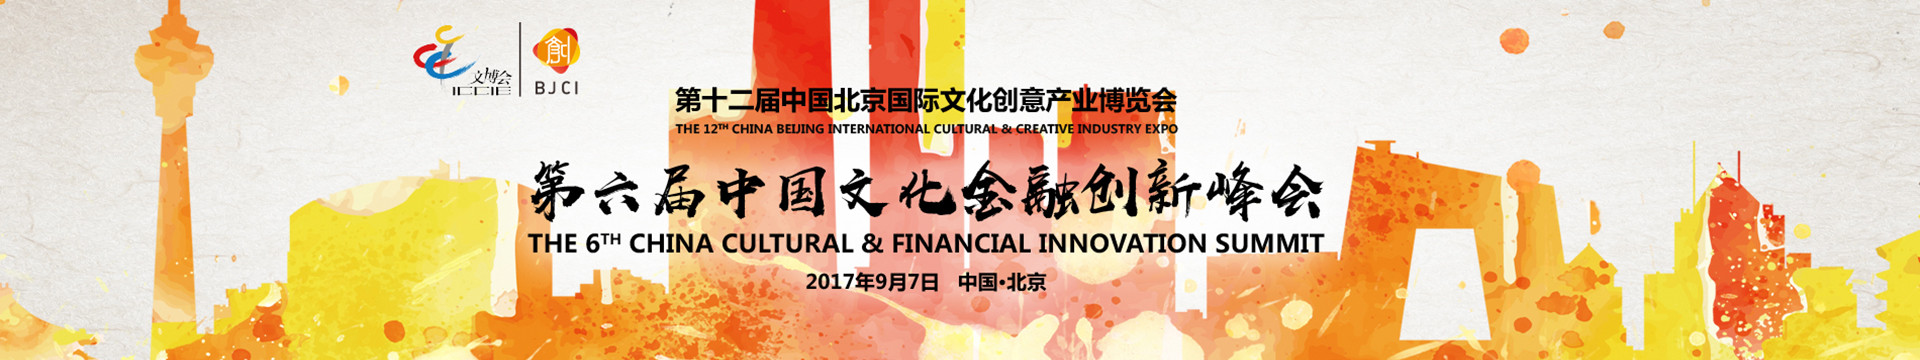 2017第六届中国文化金融创新峰会